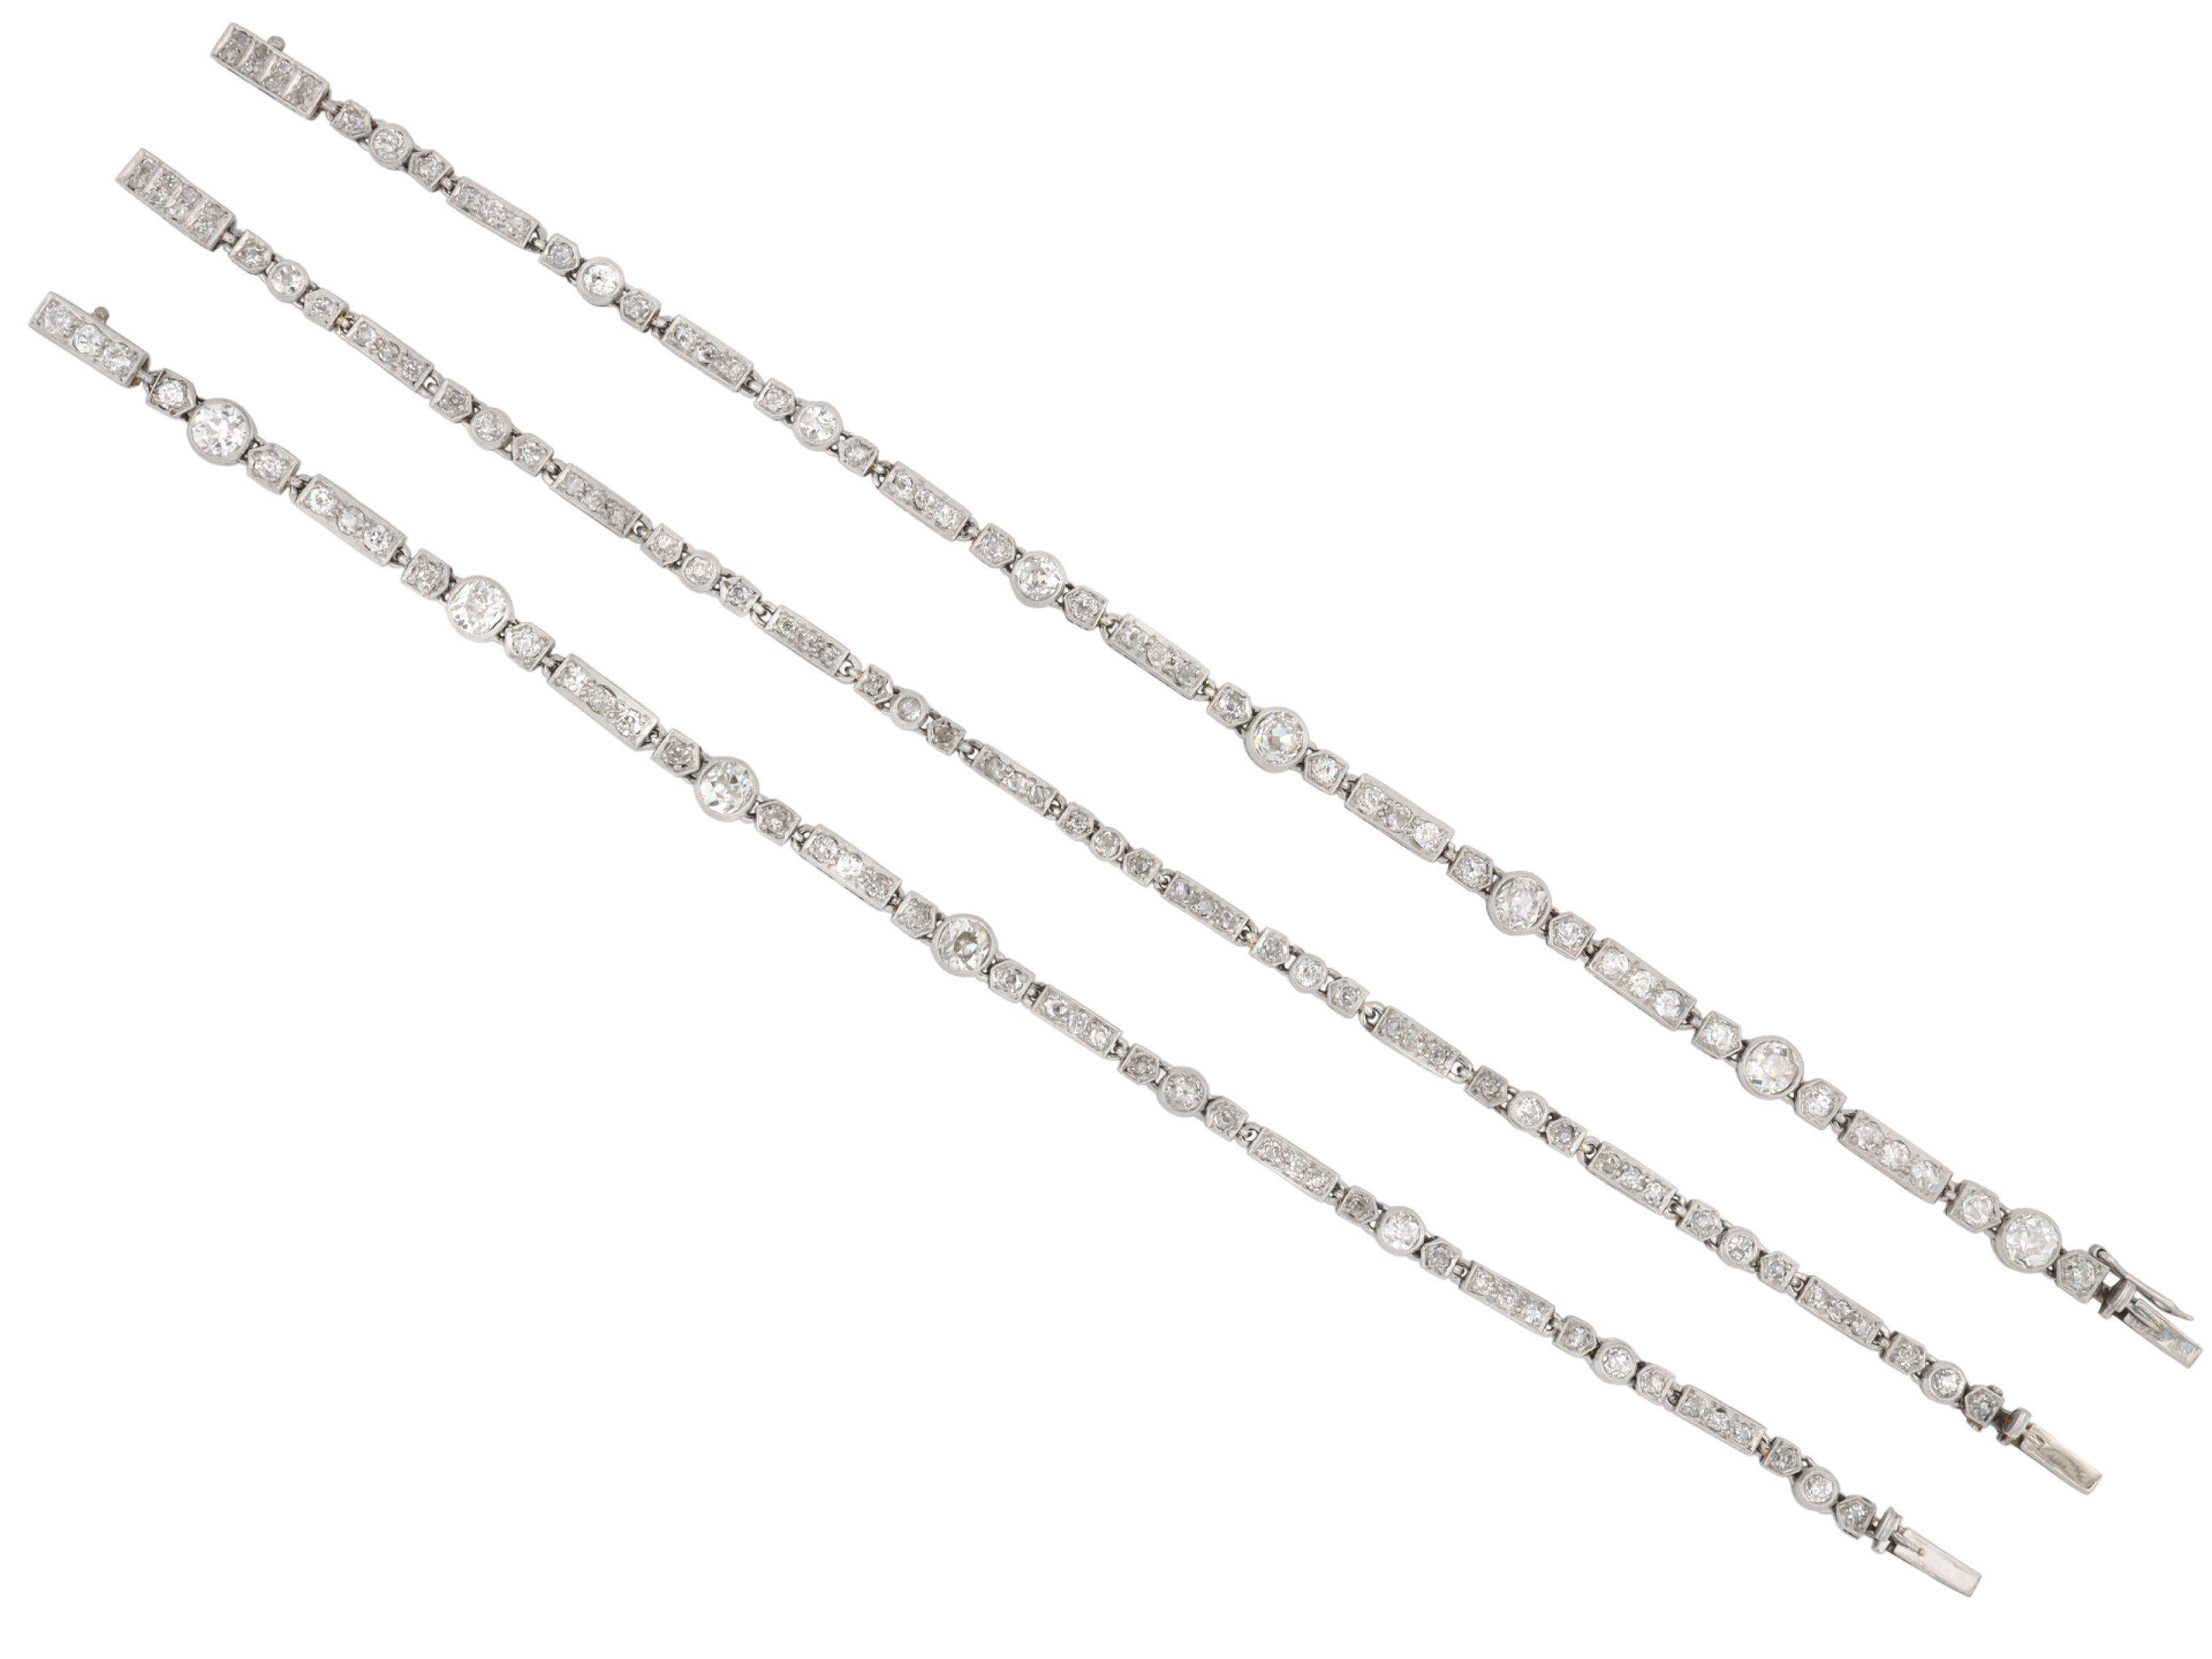 Wandelbare Diamant-Halskette/Armband. Besetzt mit fünfundzwanzig kissenförmigen Diamanten aus alten Minen in offenen Fassungen mit einem Gesamtgewicht von ca. 4,30 Karat, außerdem besetzt mit einhundertfünfunddreißig gemischten runden Diamanten im